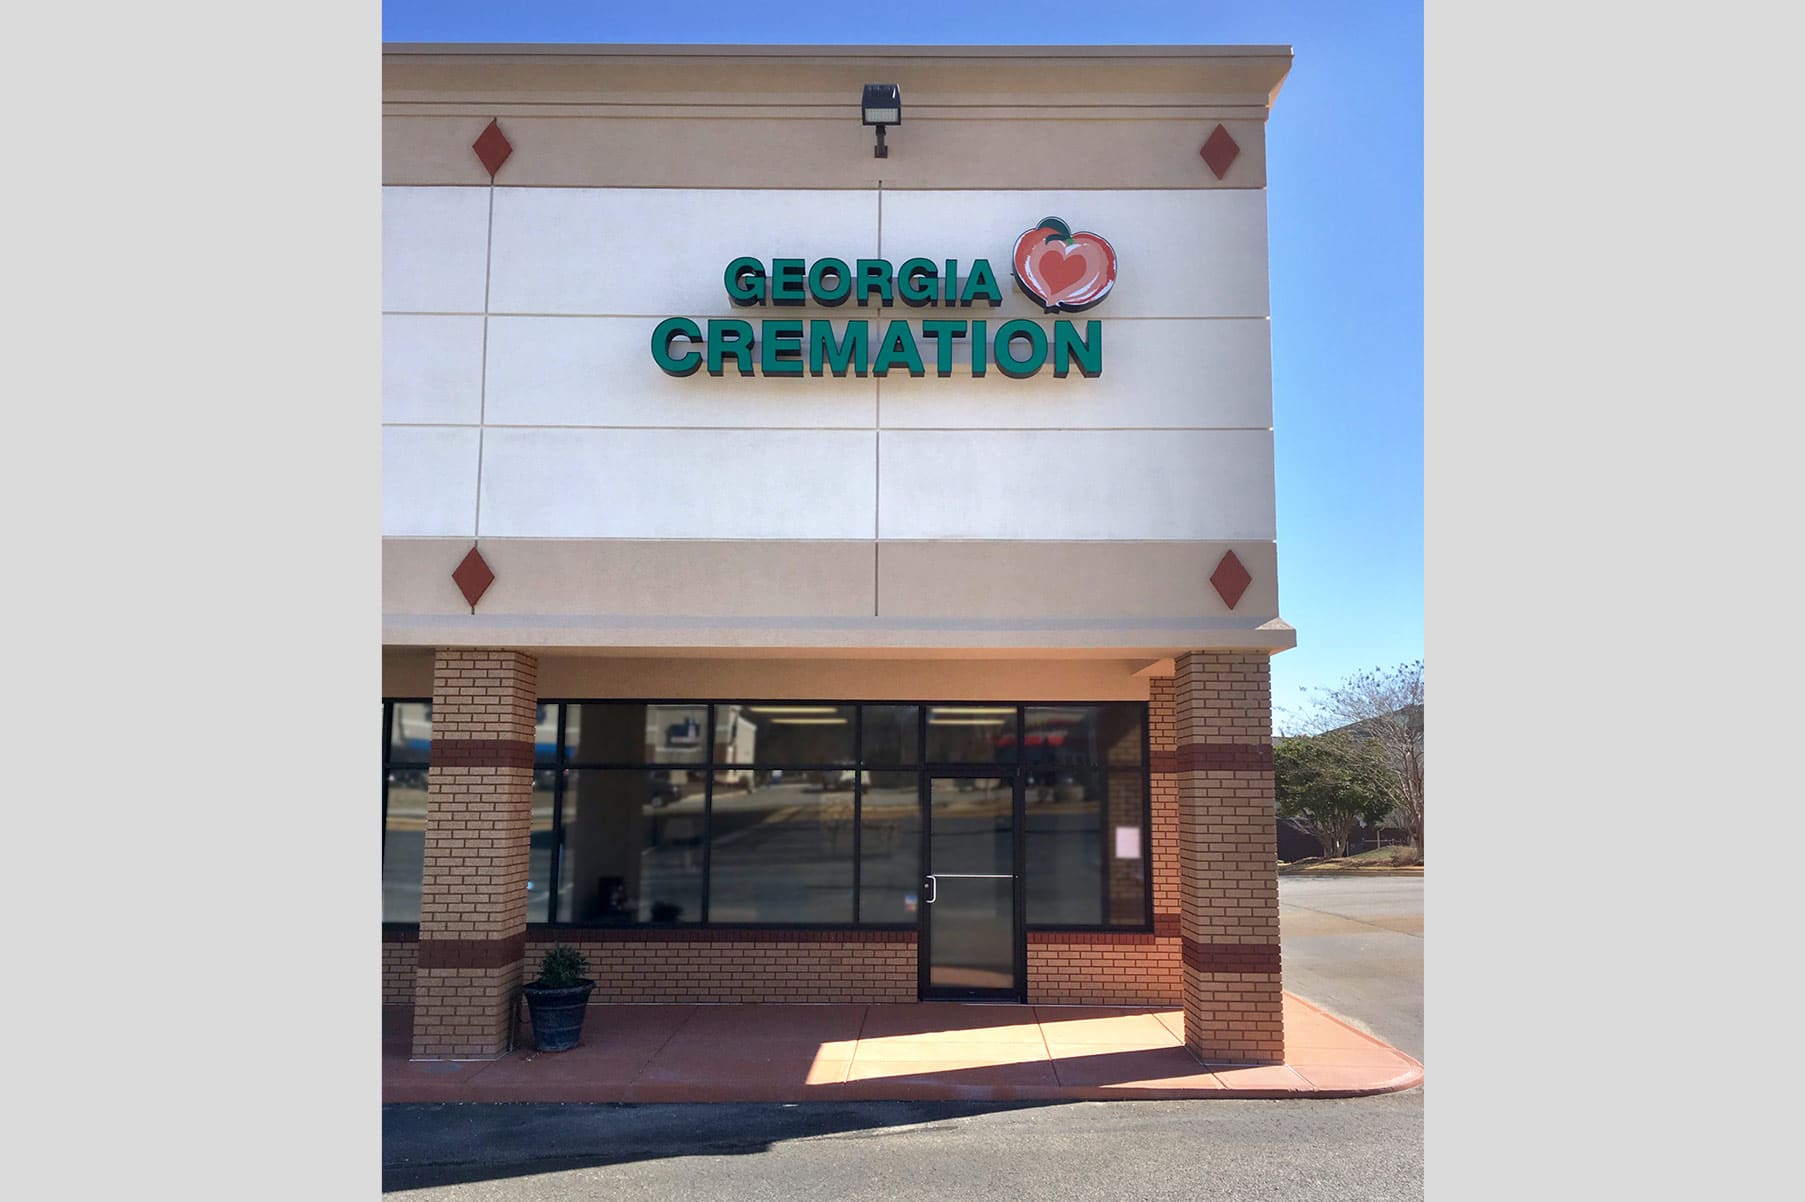 Georgia Cremation's building in Columbus, GA